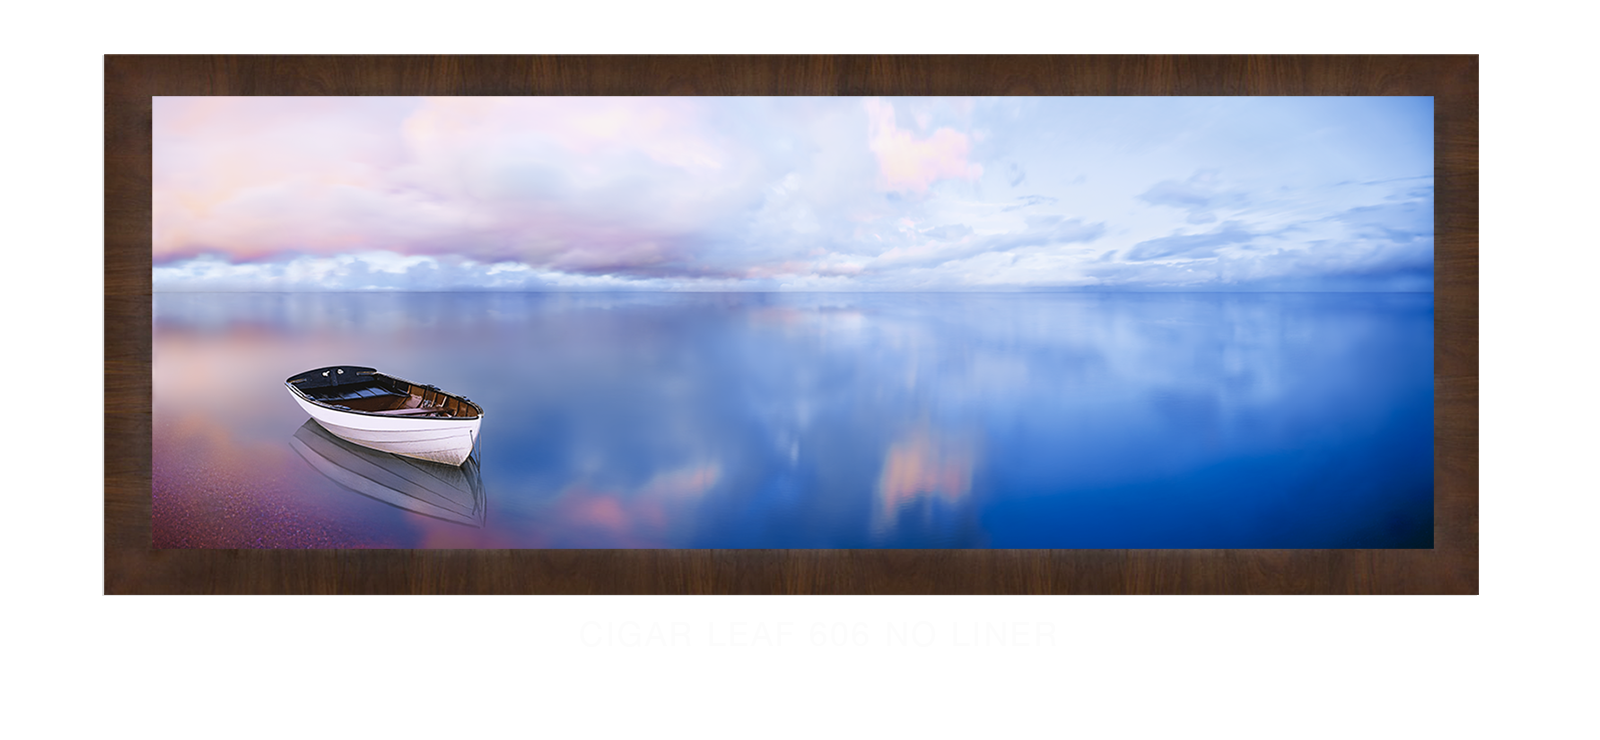 22BLUELAKEBOAT Cigar Leaf 606 w_No Liner T